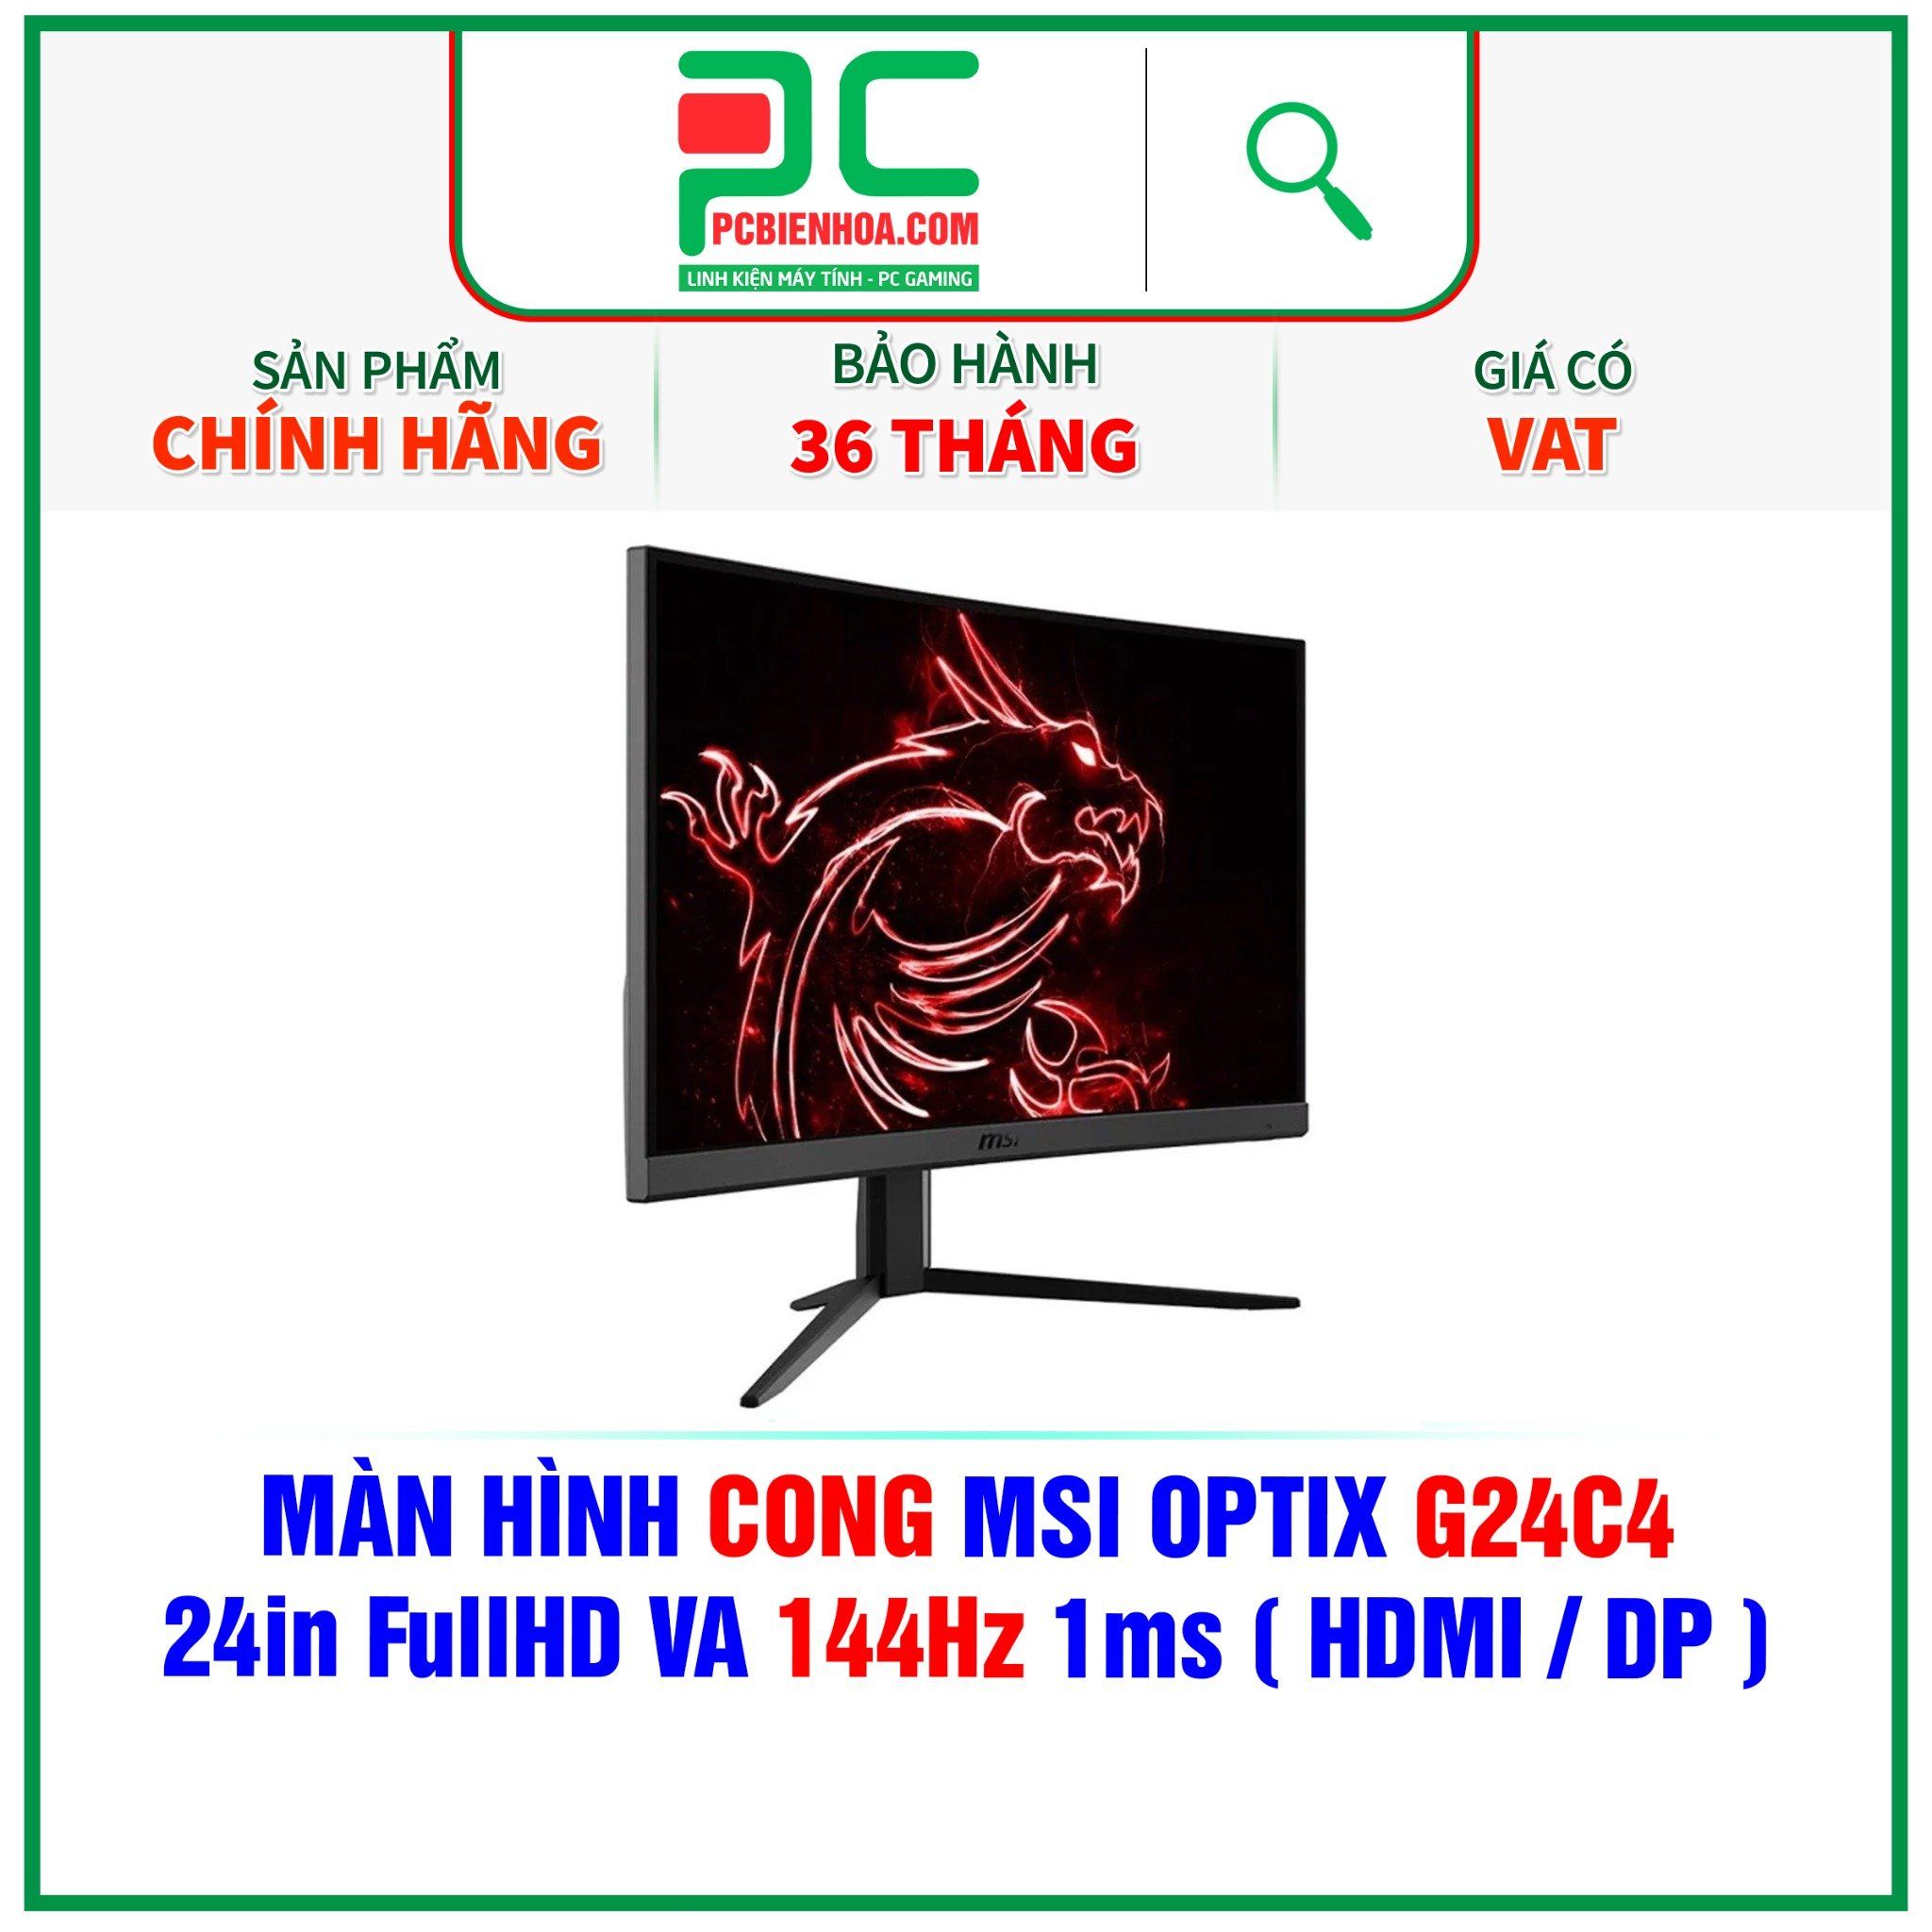  MÀN HÌNH CONG MSI OPTIX G24C4 - 24in FullHD VA 144Hz 1ms ( HDMI / DP ) 